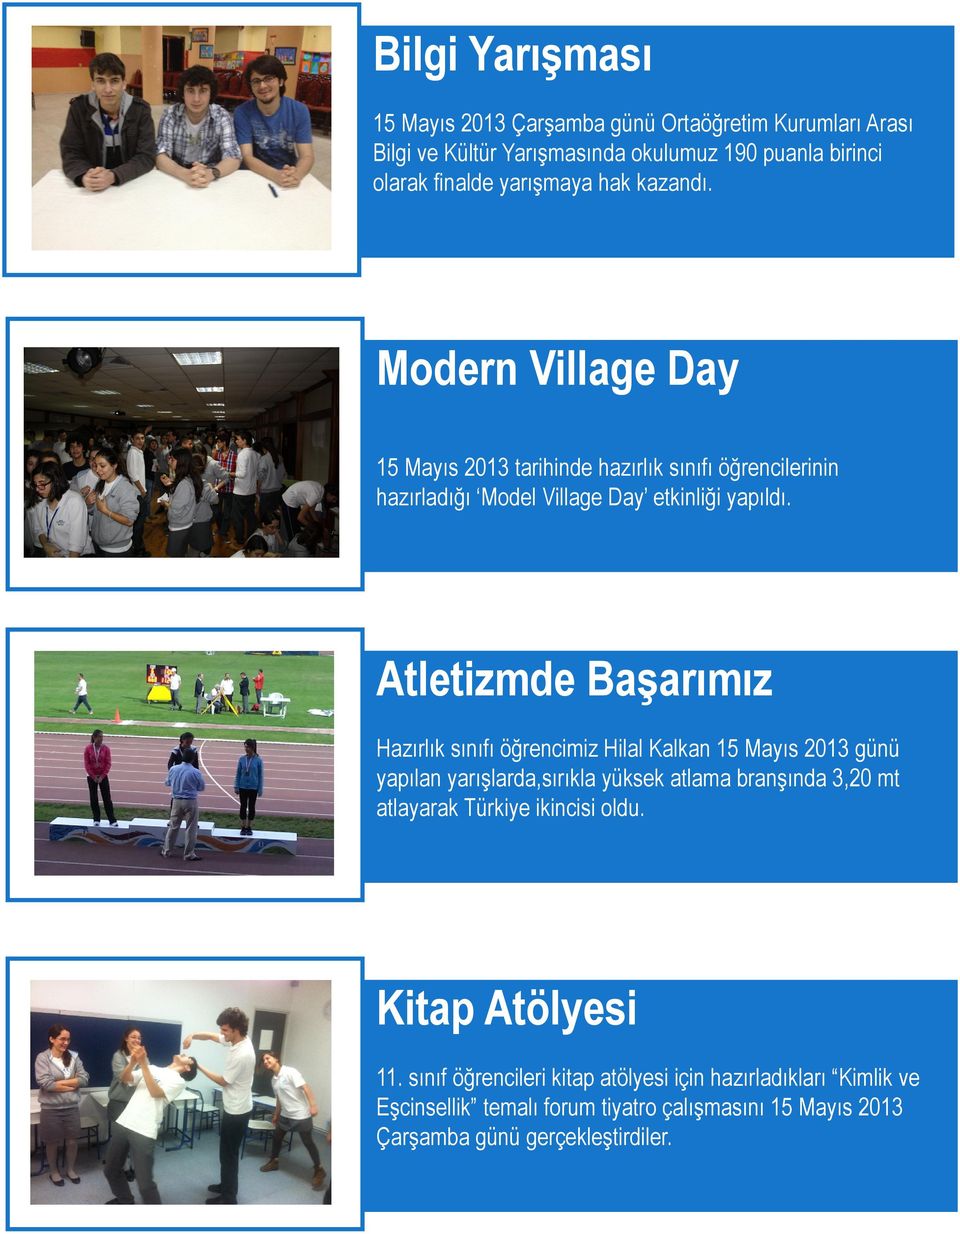 Atletizmde Başarımız Hazırlık sınıfı öğrencimiz Hilal Kalkan 15 Mayıs 2013 günü yapılan yarışlarda,sırıkla yüksek atlama branşında 3,20 mt atlayarak Türkiye